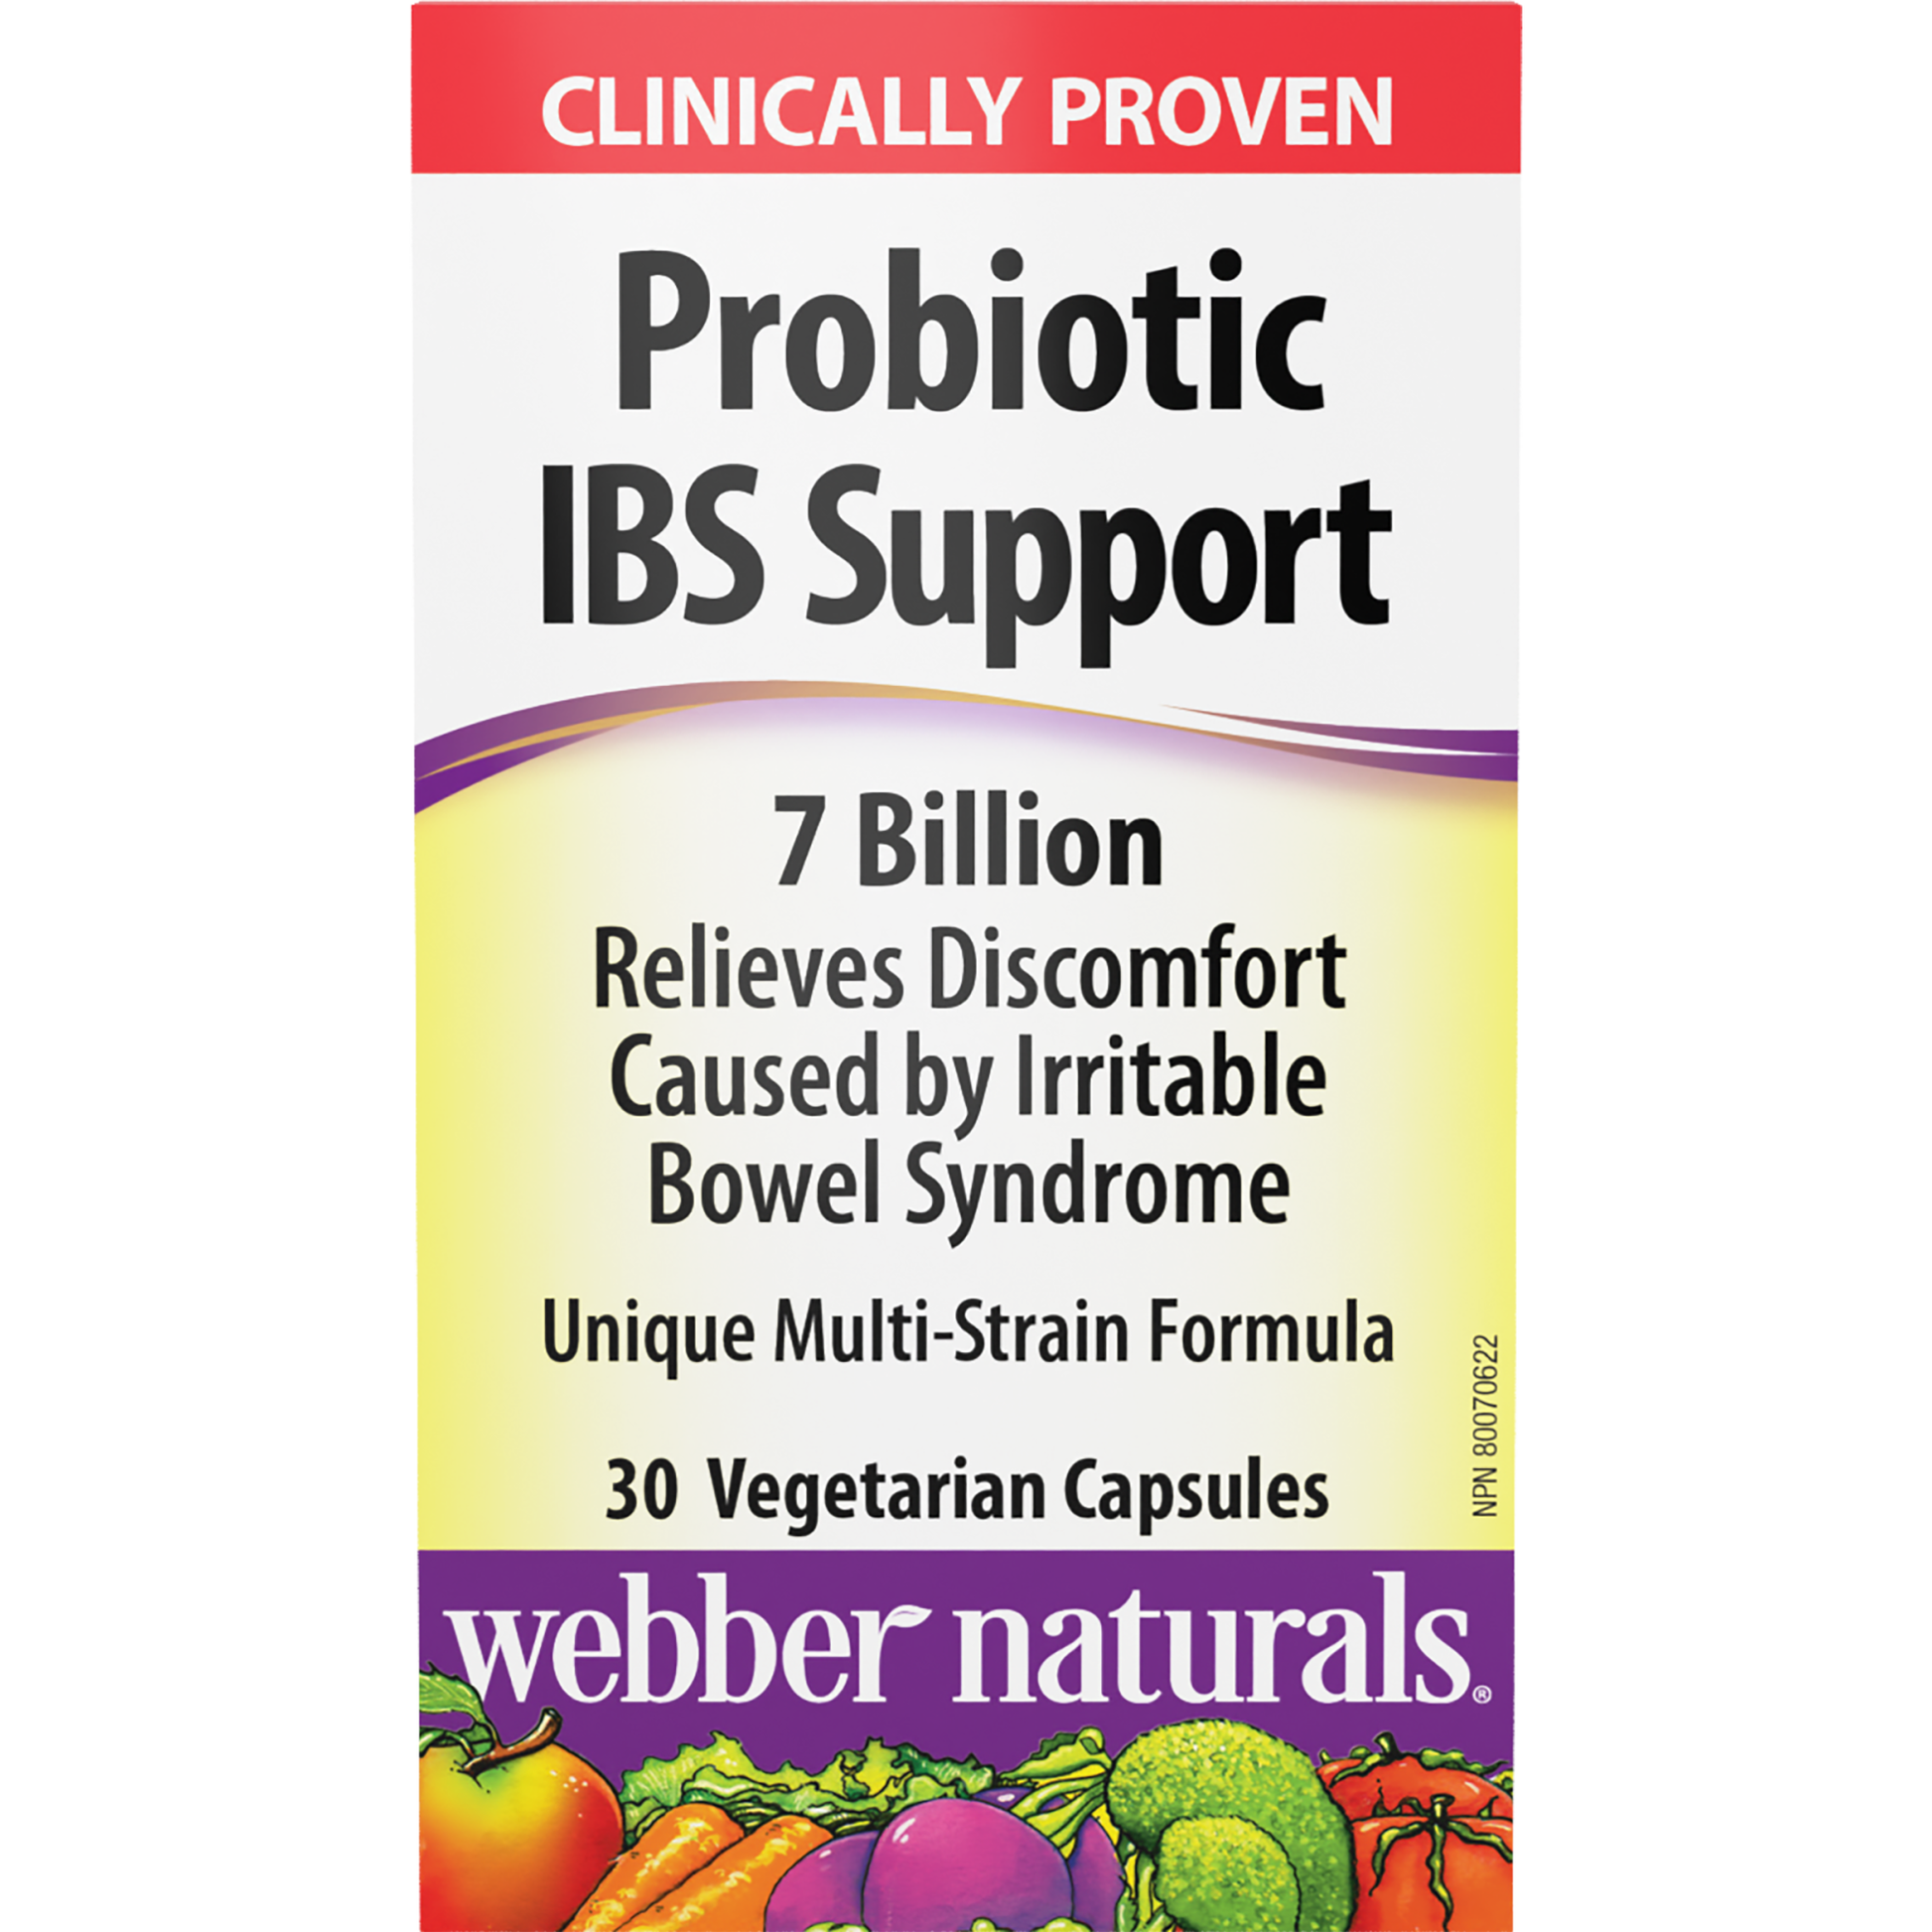 Probiotic IBS Support for Webber Naturals|v|hi-res|WN3222